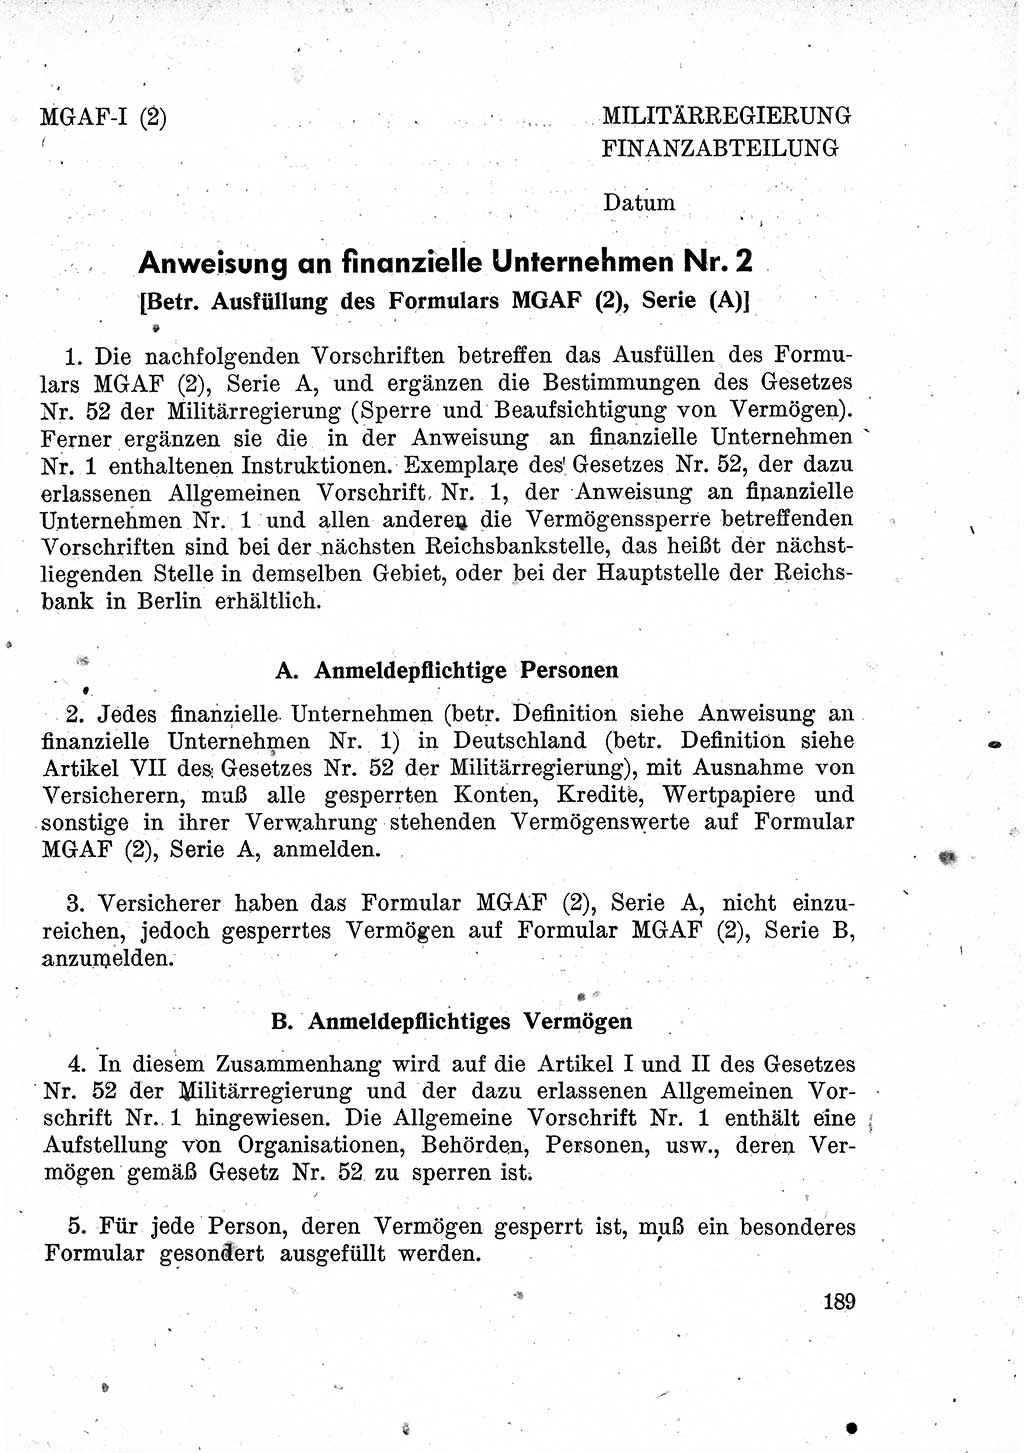 Das Recht der Besatzungsmacht (Deutschland), Proklamationen, Deklerationen, Verordnungen, Gesetze und Bekanntmachungen 1947, Seite 189 (R. Bes. Dtl. 1947, S. 189)